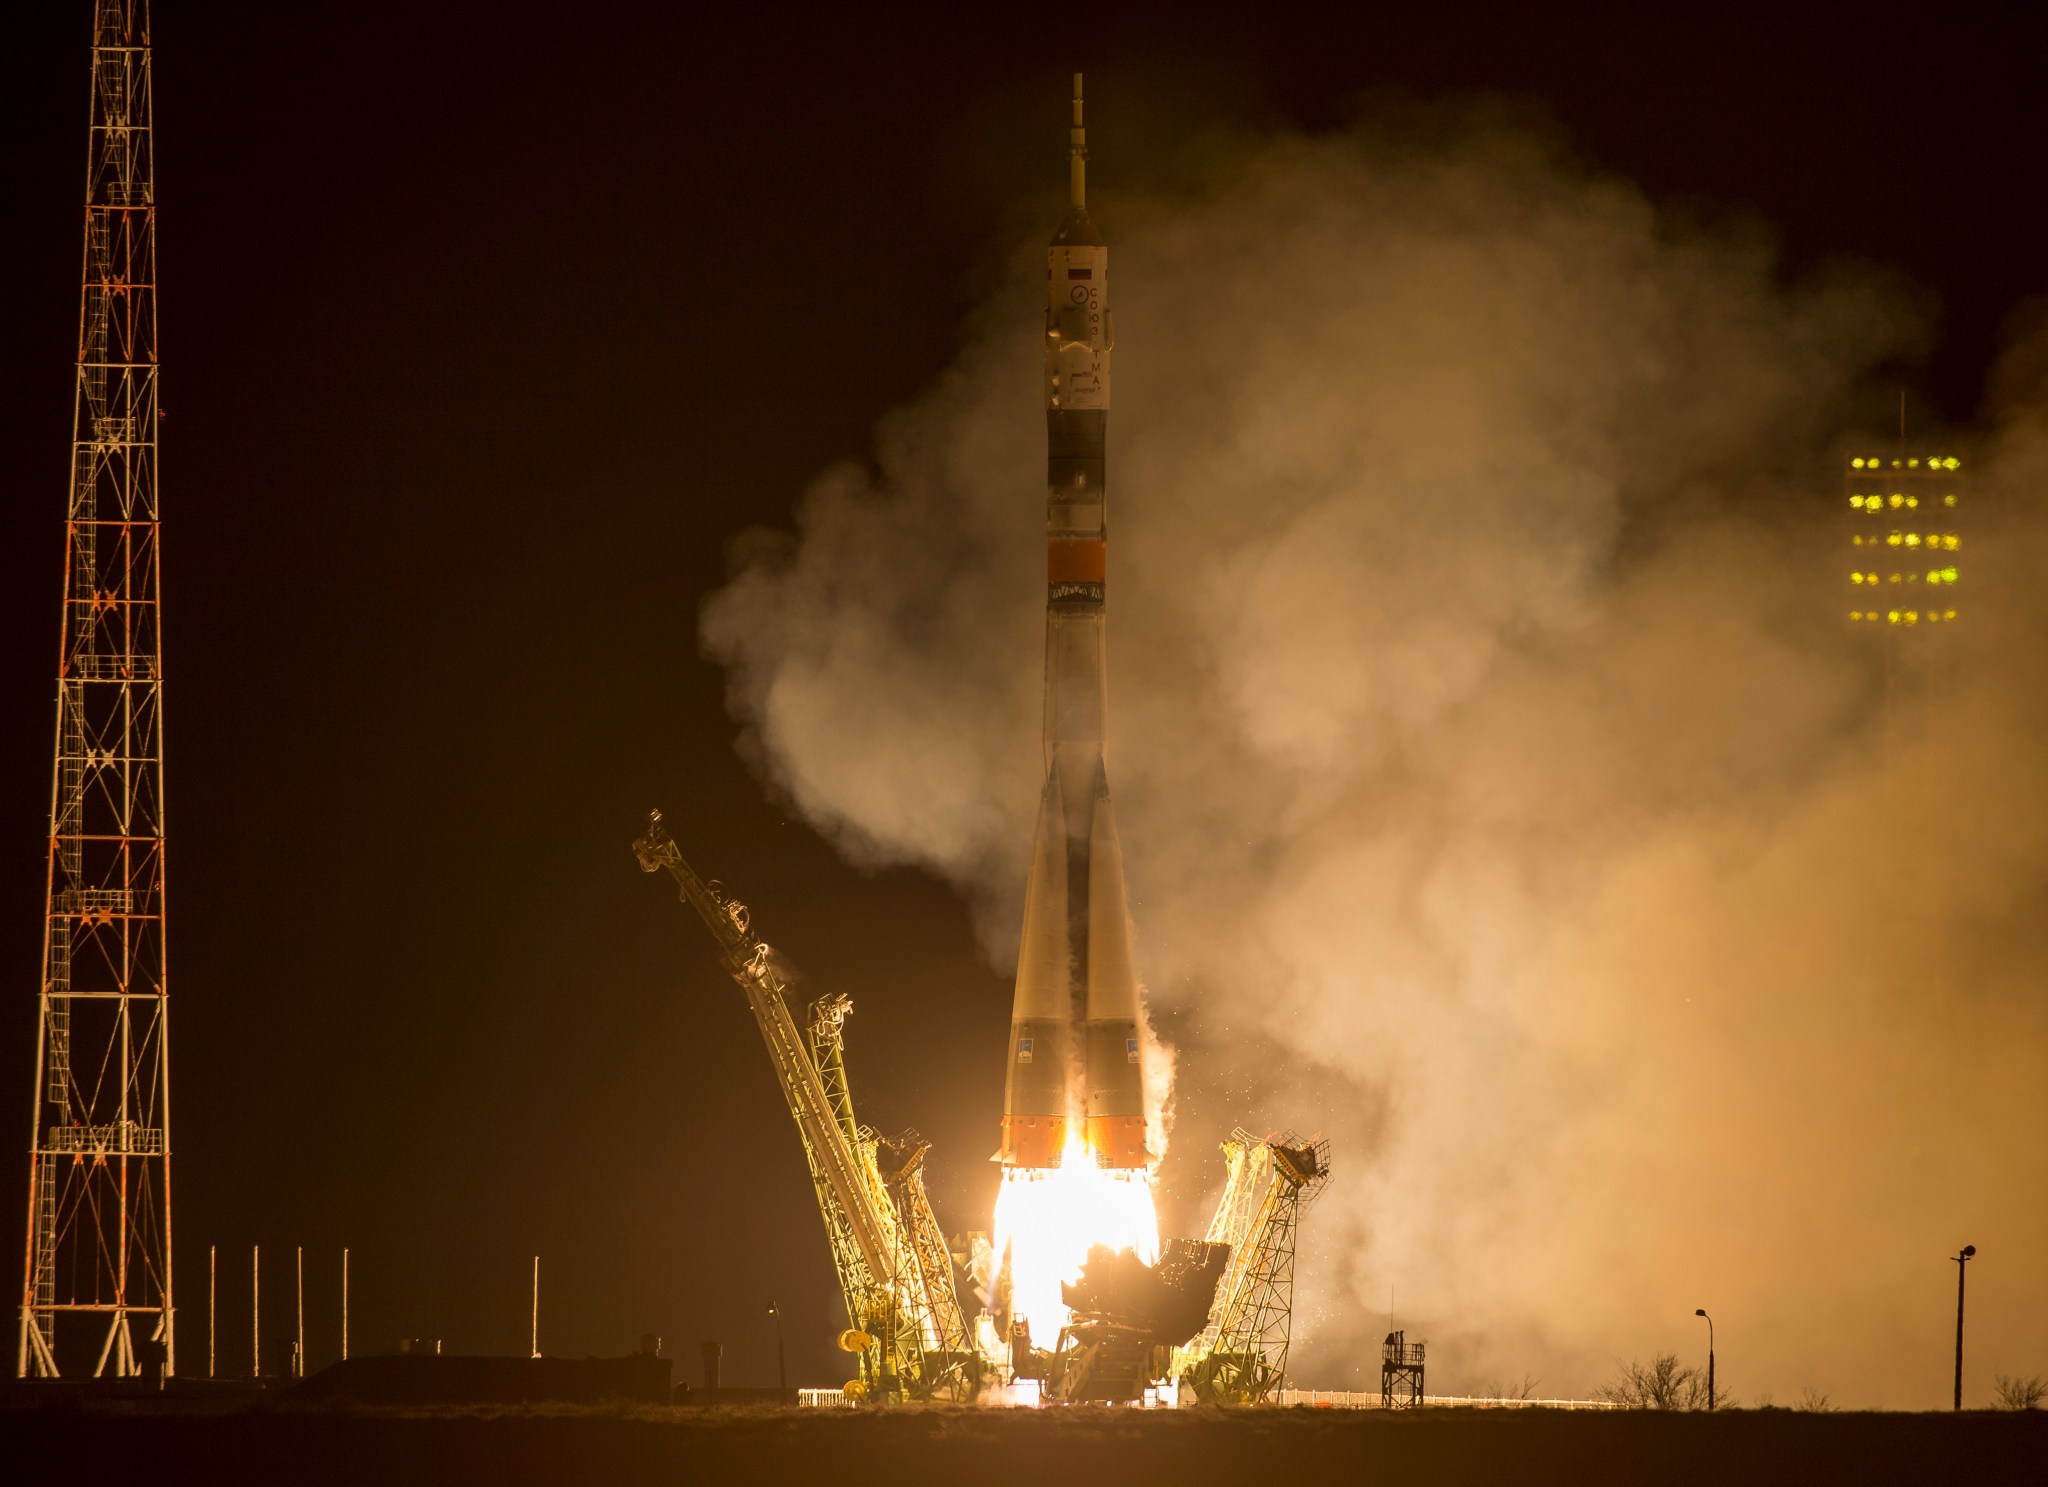 Fiery nighttime launch of Soyuz rocket from Baikonur